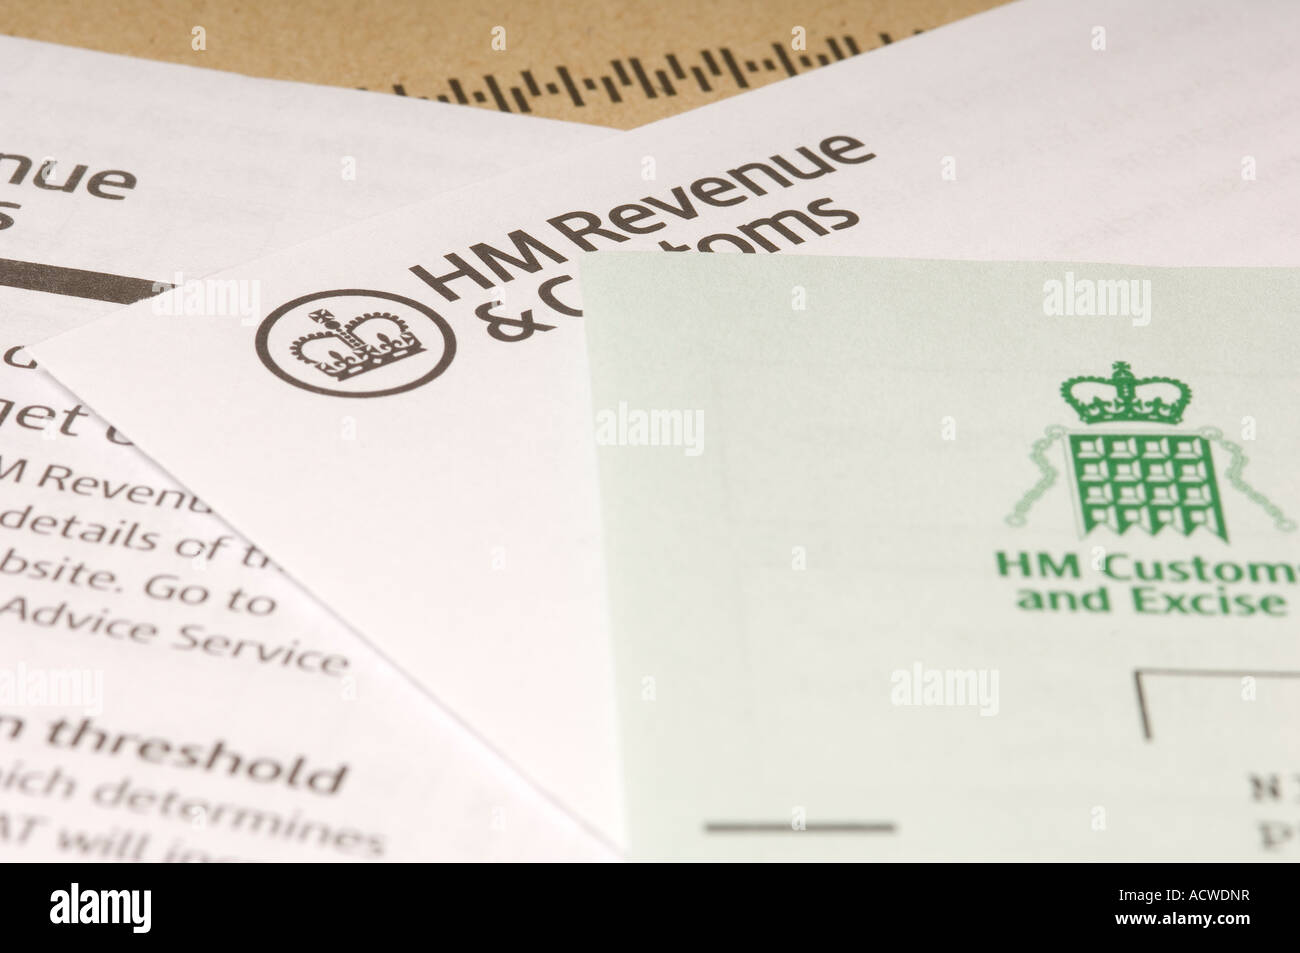 HM Revenue and Customs, taxe sur la valeur ajoutée sous forme de retour de HMRC England UK Royaume-Uni GB Grande Bretagne Banque D'Images